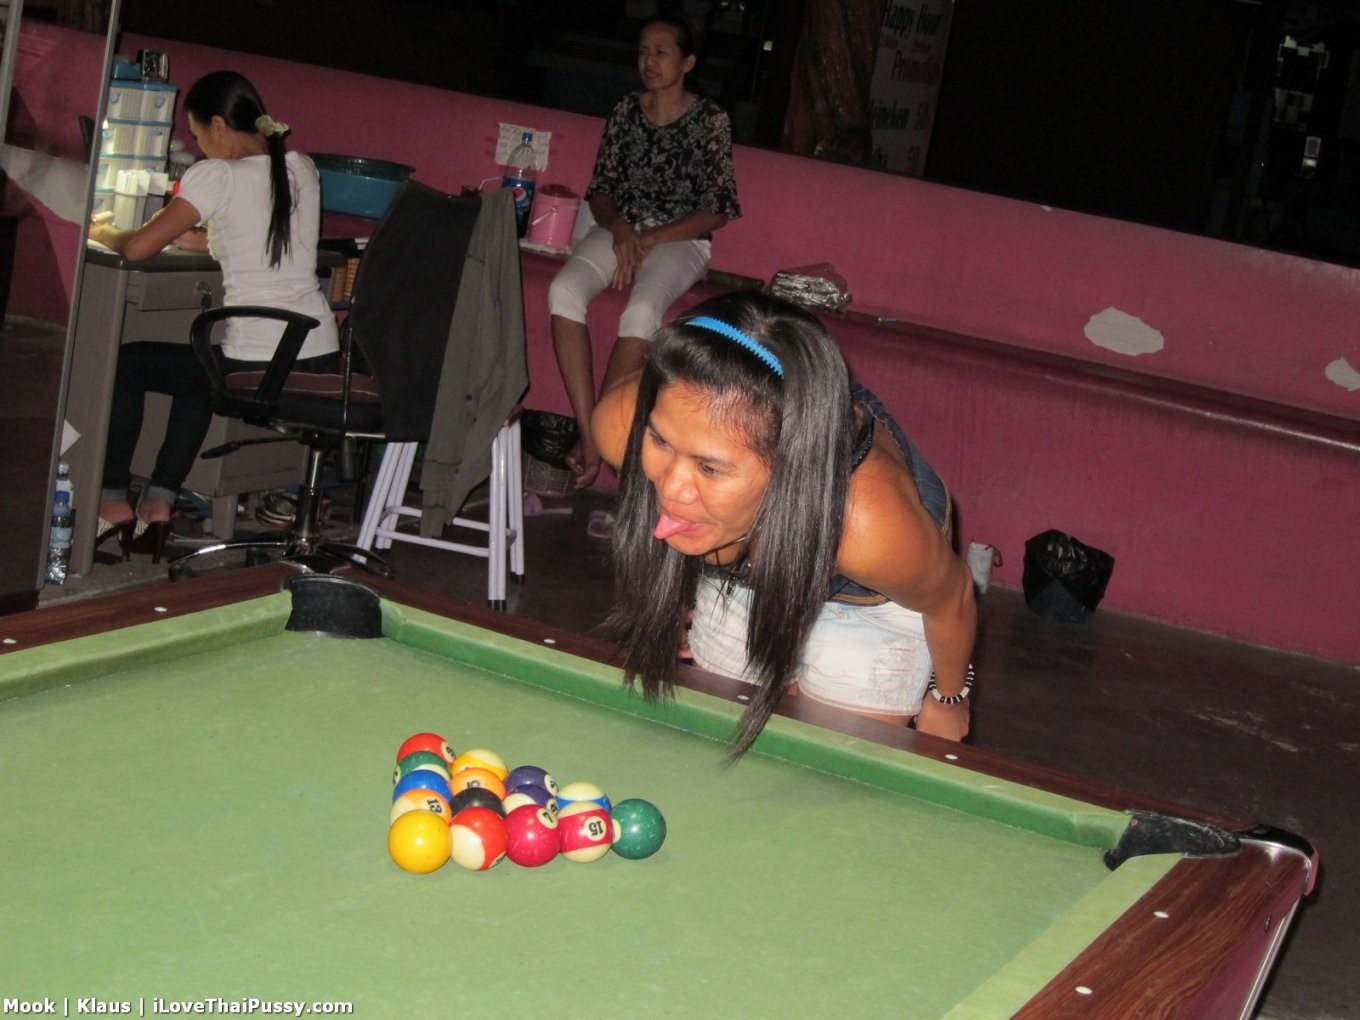 Ubriaca puttana thailandese gioca a biliardo e scopa bareback pazza figa asiatica turista del sesso
 #68086419